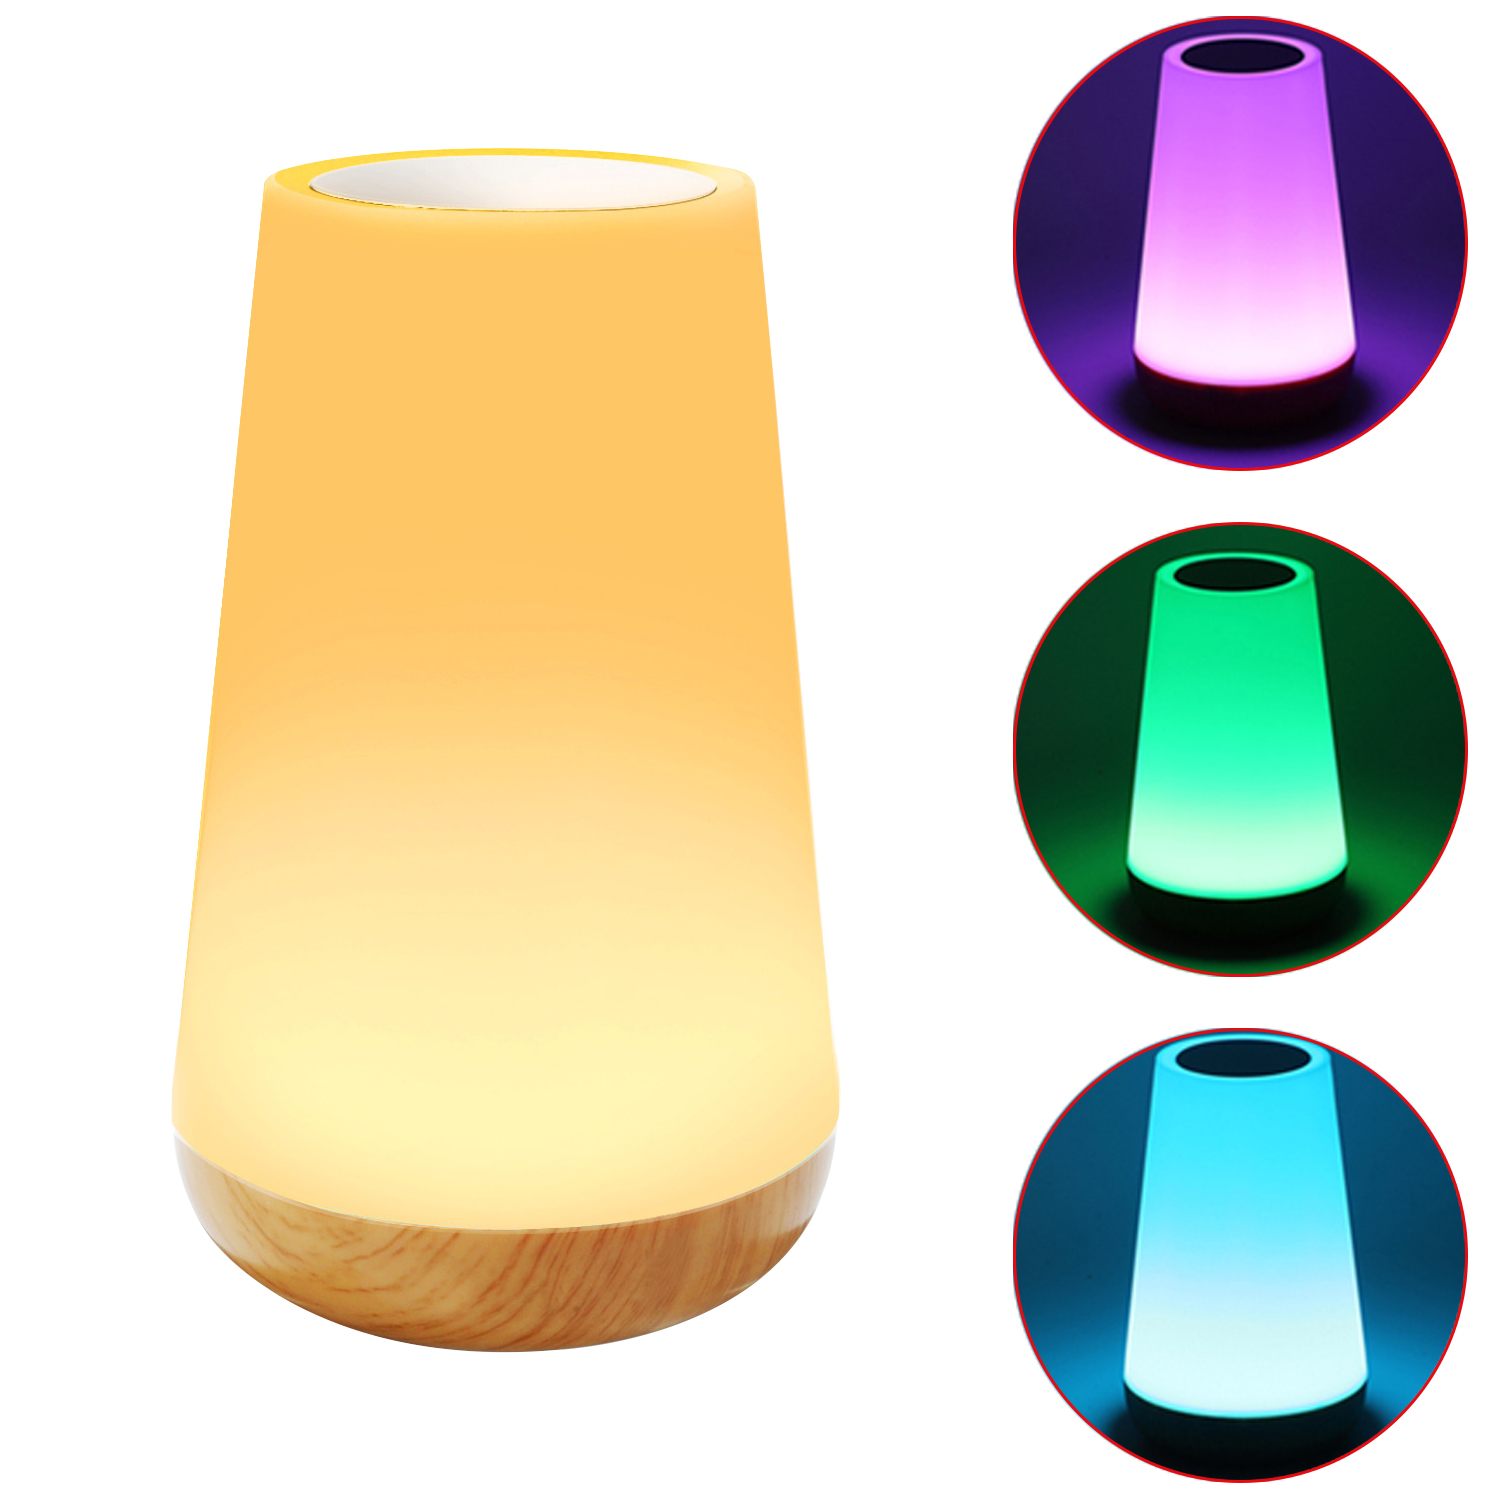 Luz nocturna RGB con Control remoto, lámpara regulable táctil, lámparas de mesa portátiles, lámpara de noche recargable por USB